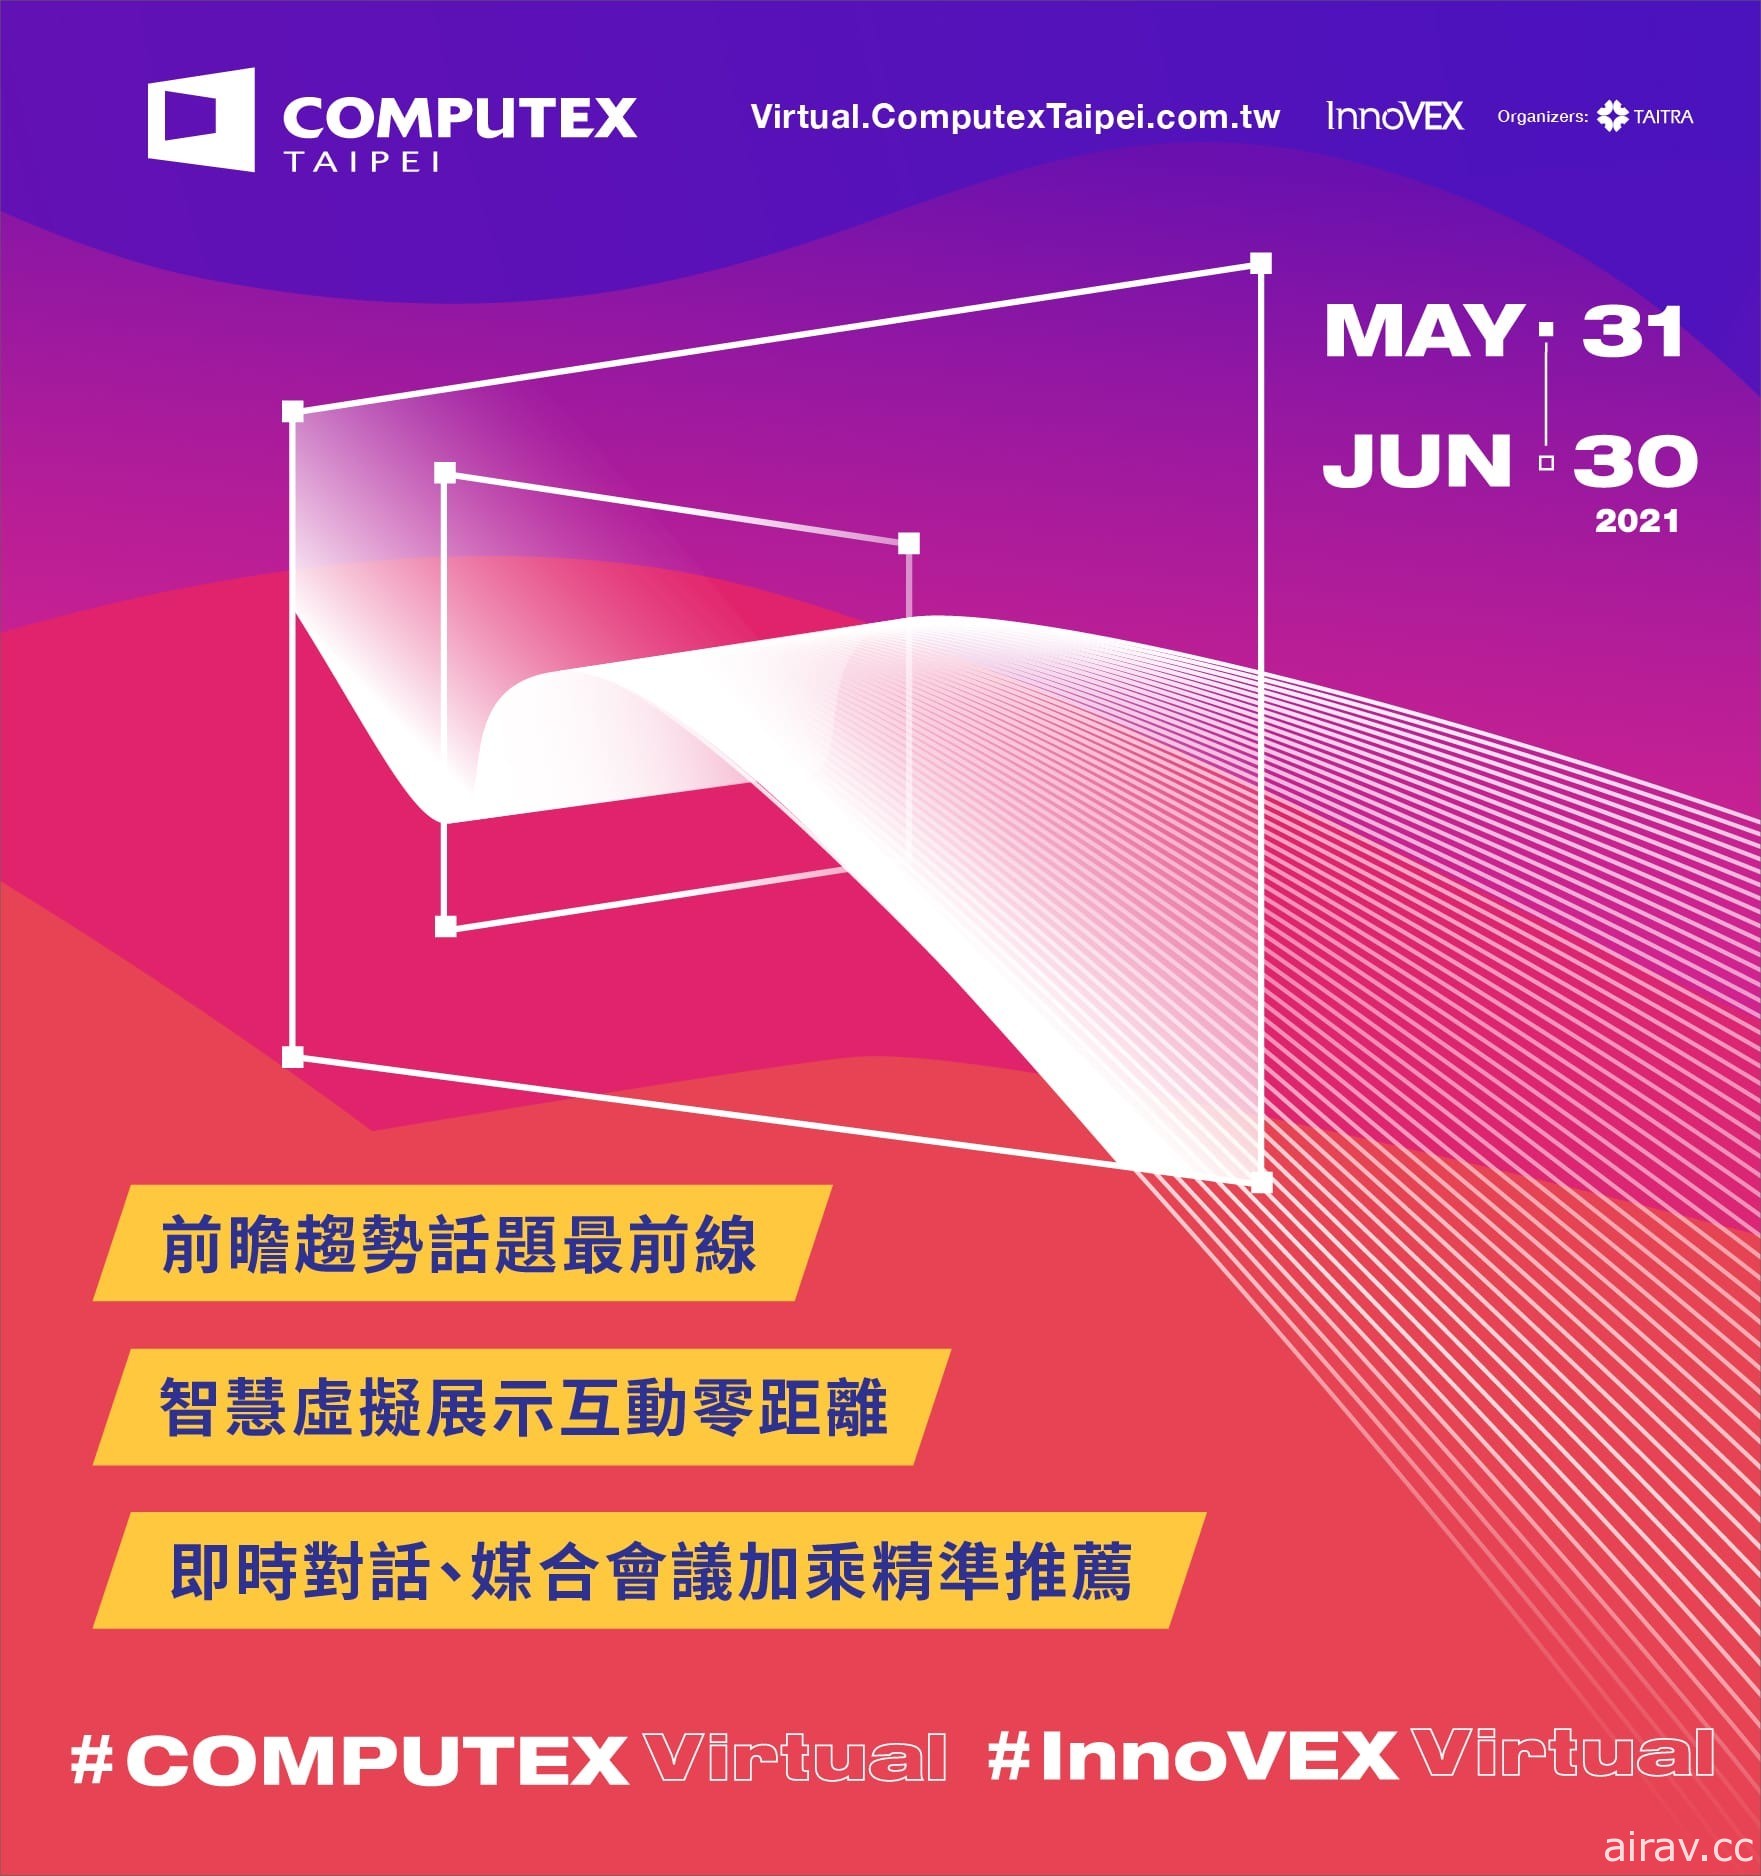 全線上形式台北國際電腦展 COMPUTEX 2021 Virtual 將於 31 日登場